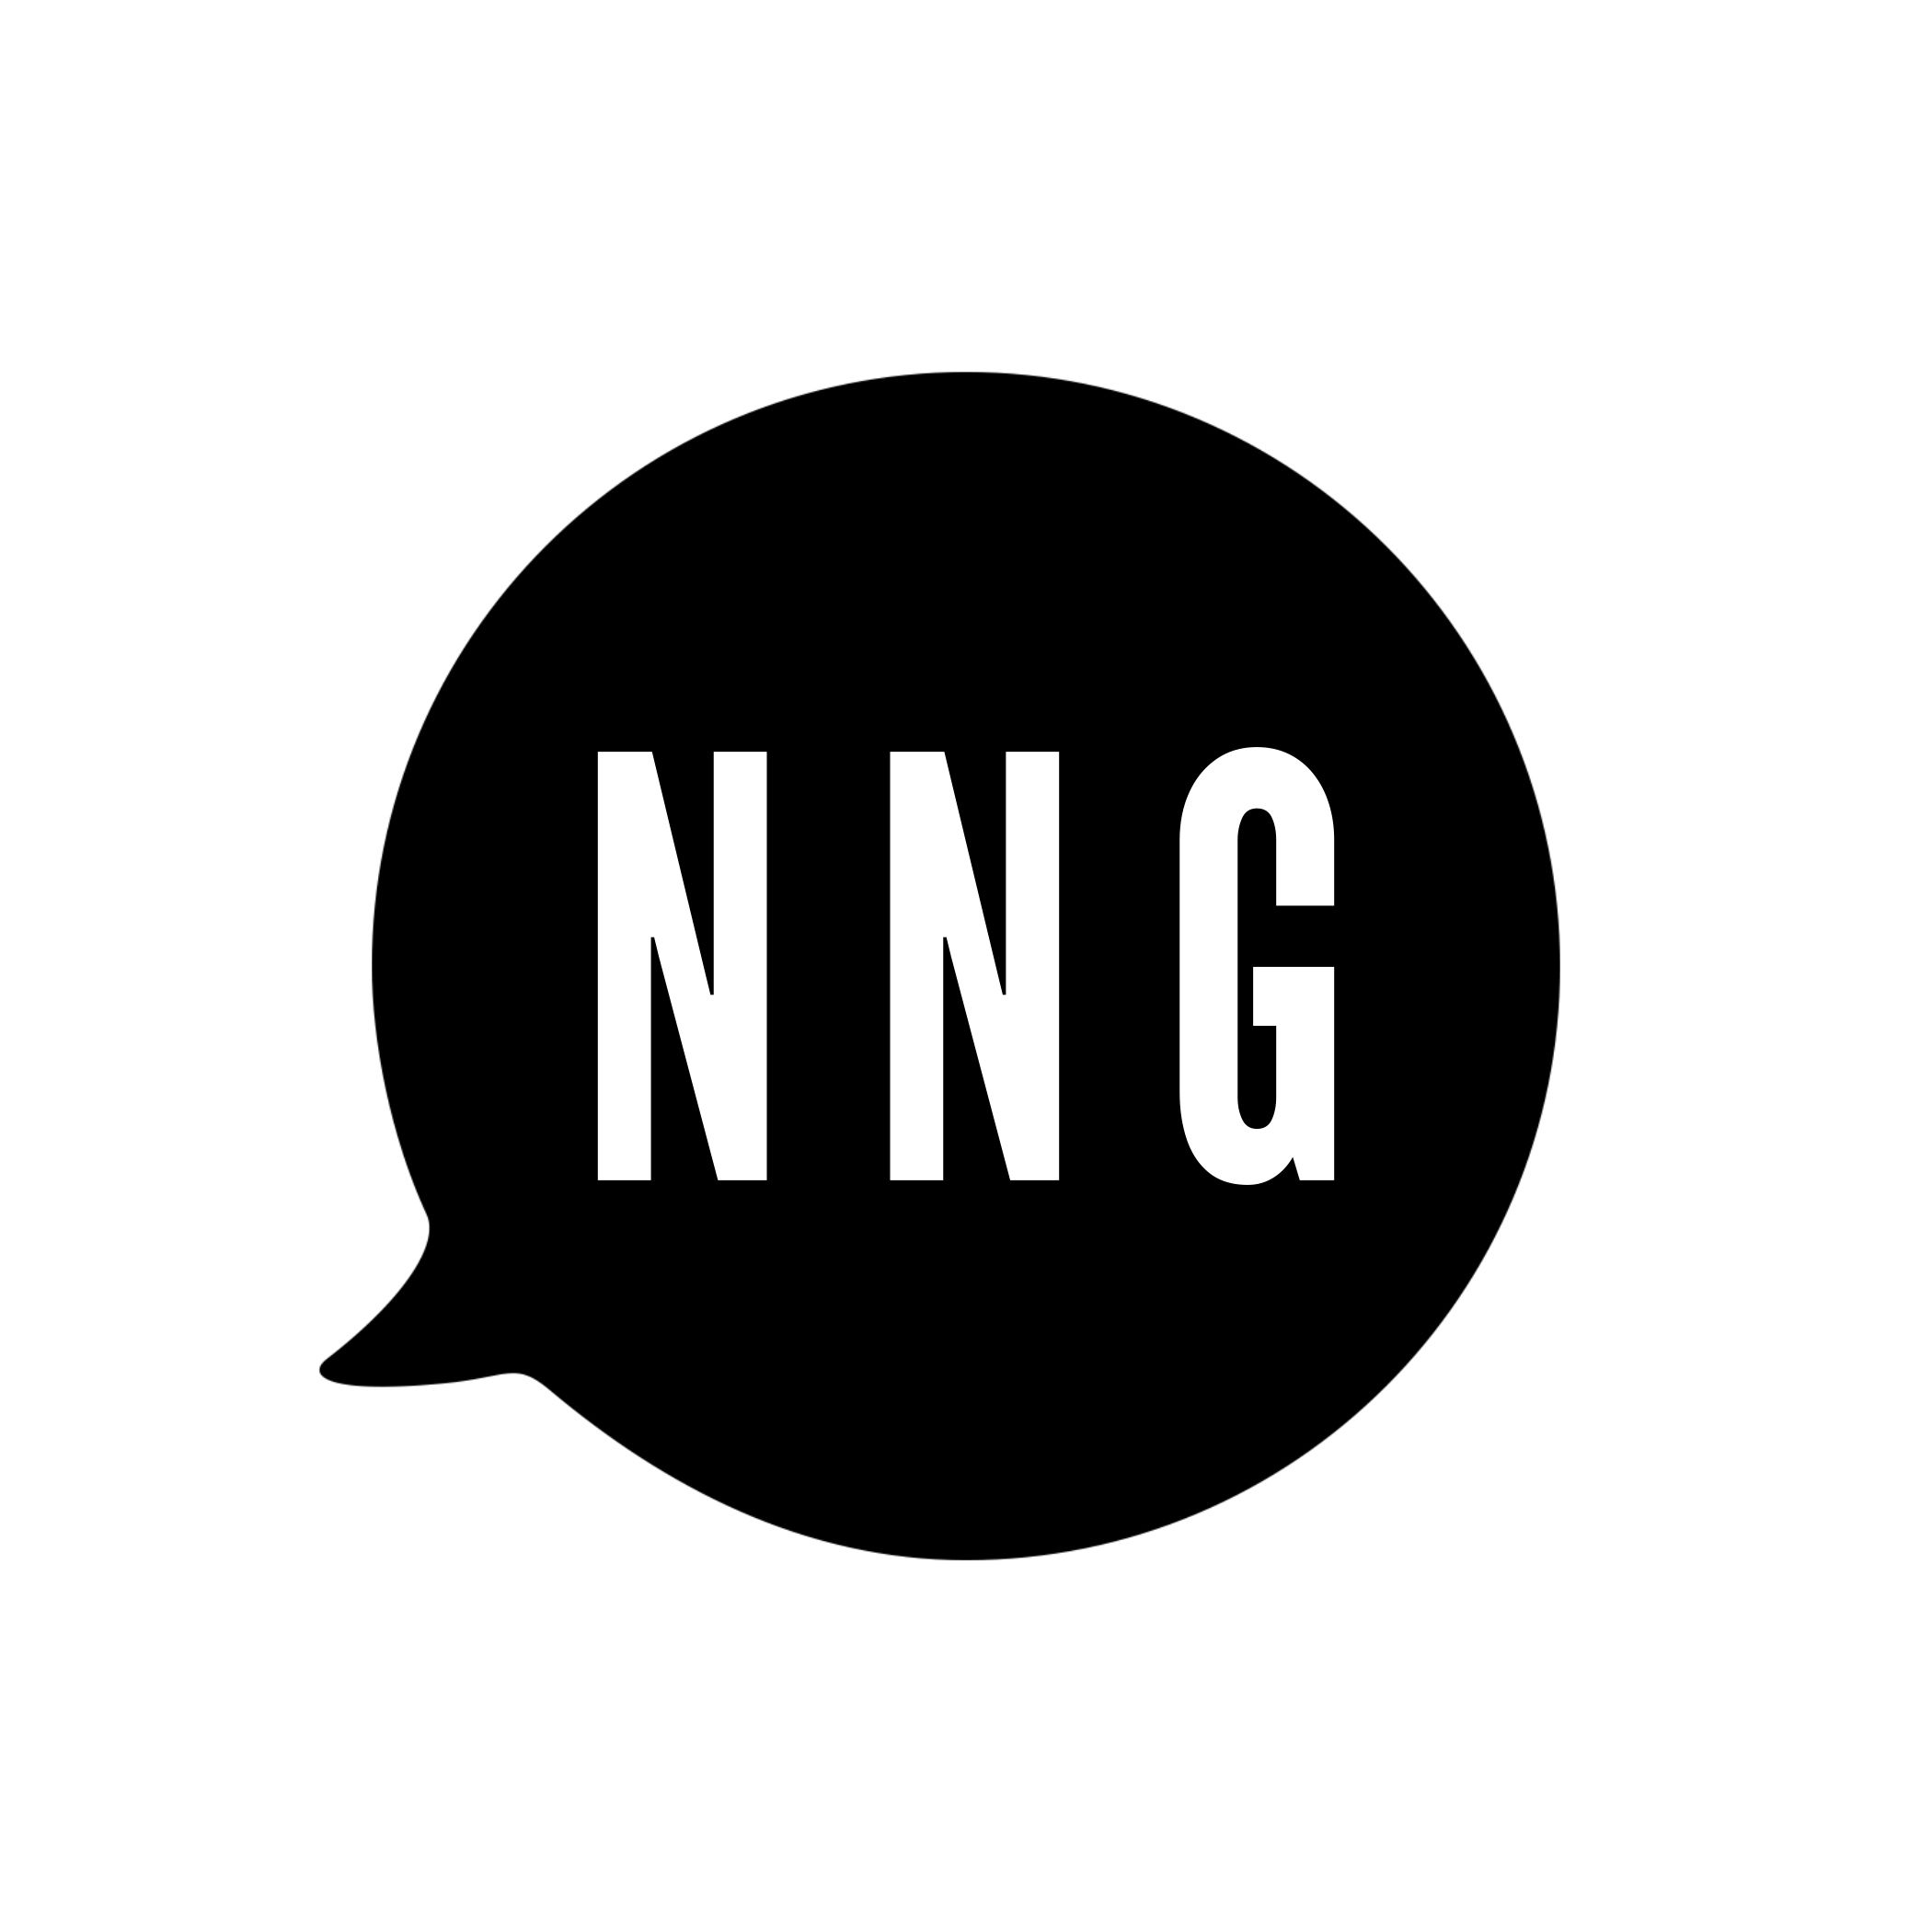 Network Next Gen Podcast